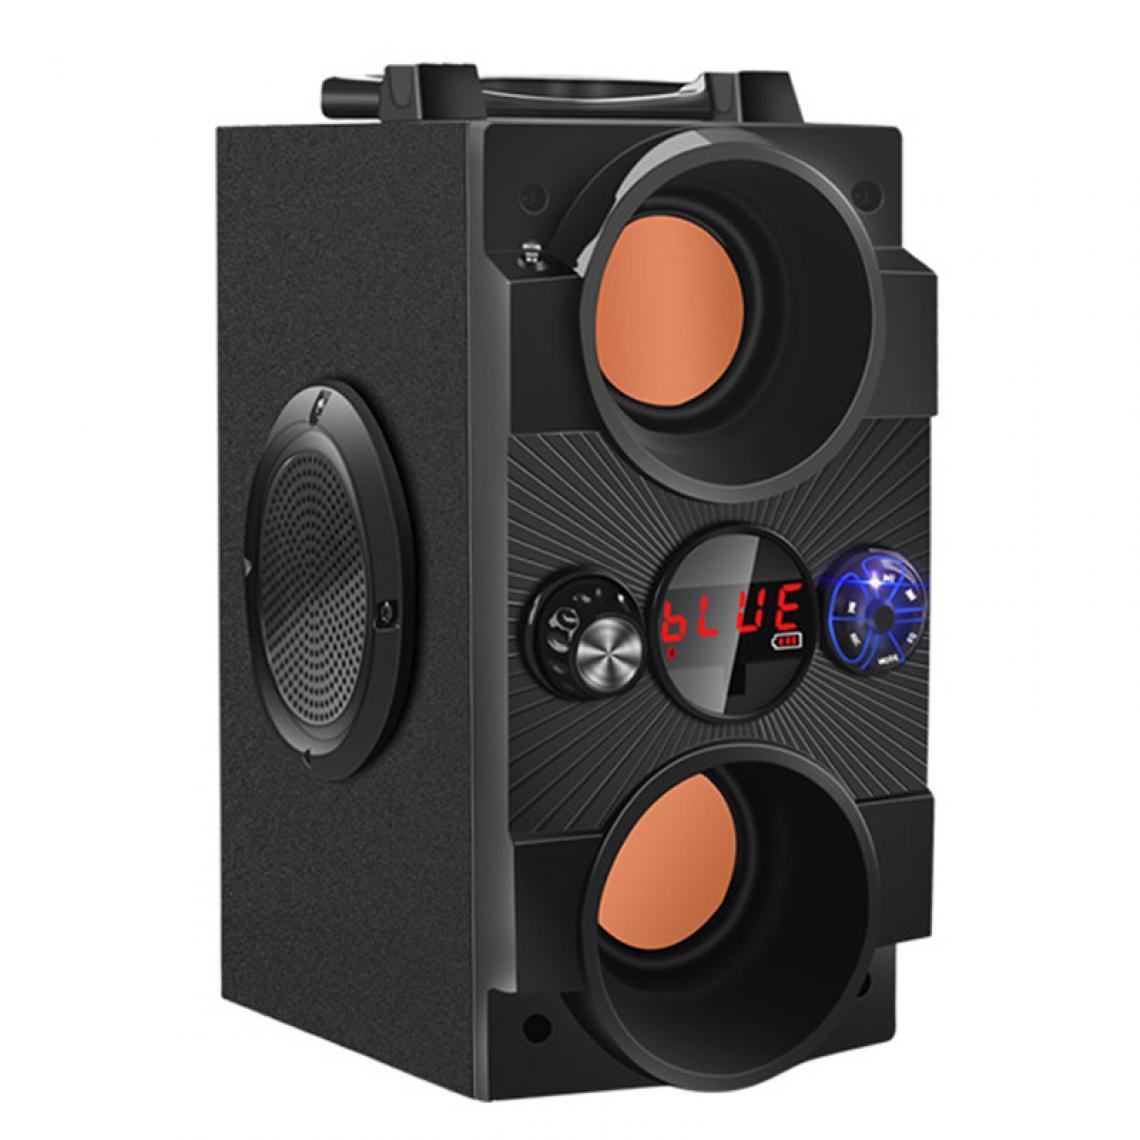 Universal - Haut-parleurs Bluetooth portables à haute puissance extérieure sans fil subwoofer support audio music center AUX TF FM radio | haut-parleurs portables (noir) - Enceinte PC